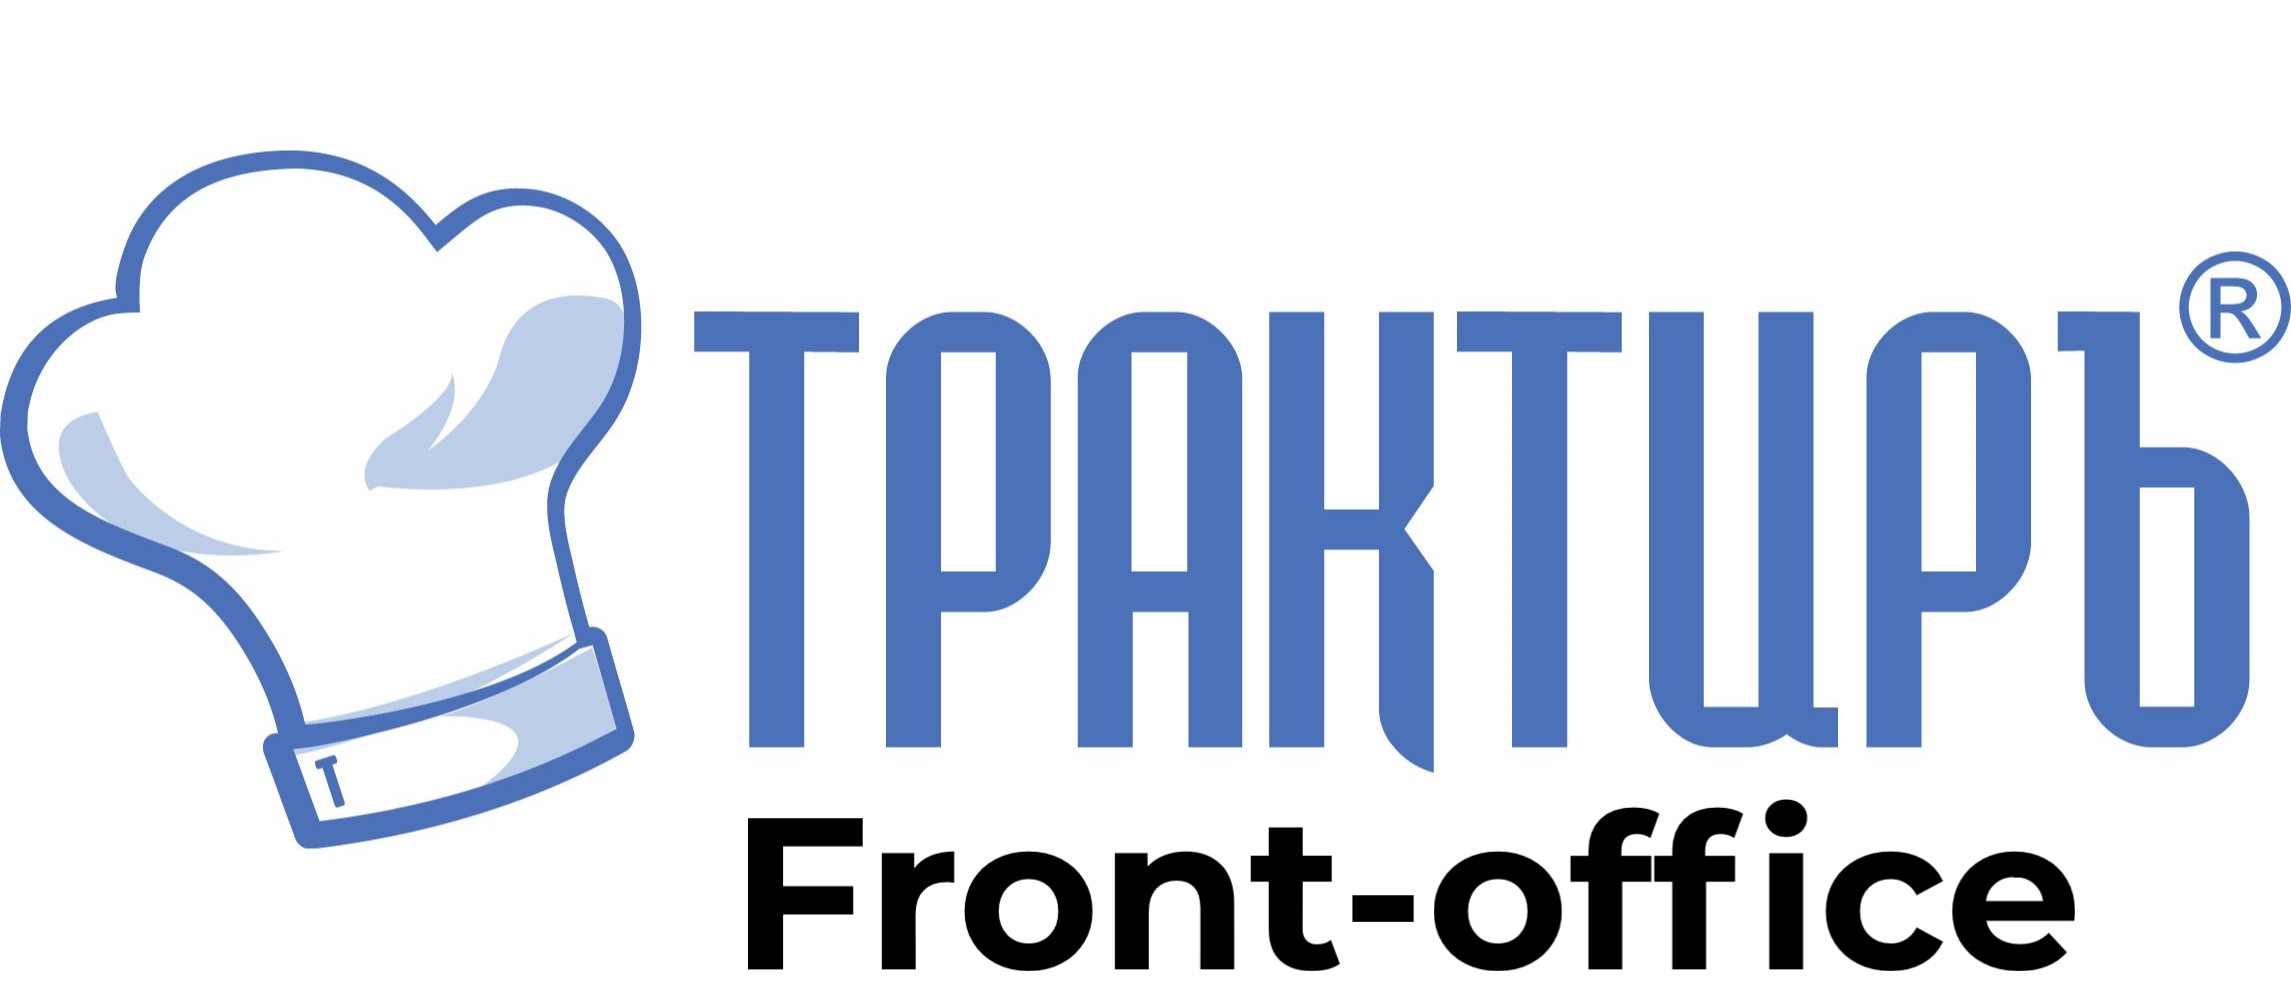 Трактиръ: Front-Office v4.5  Основная поставка в Брянске